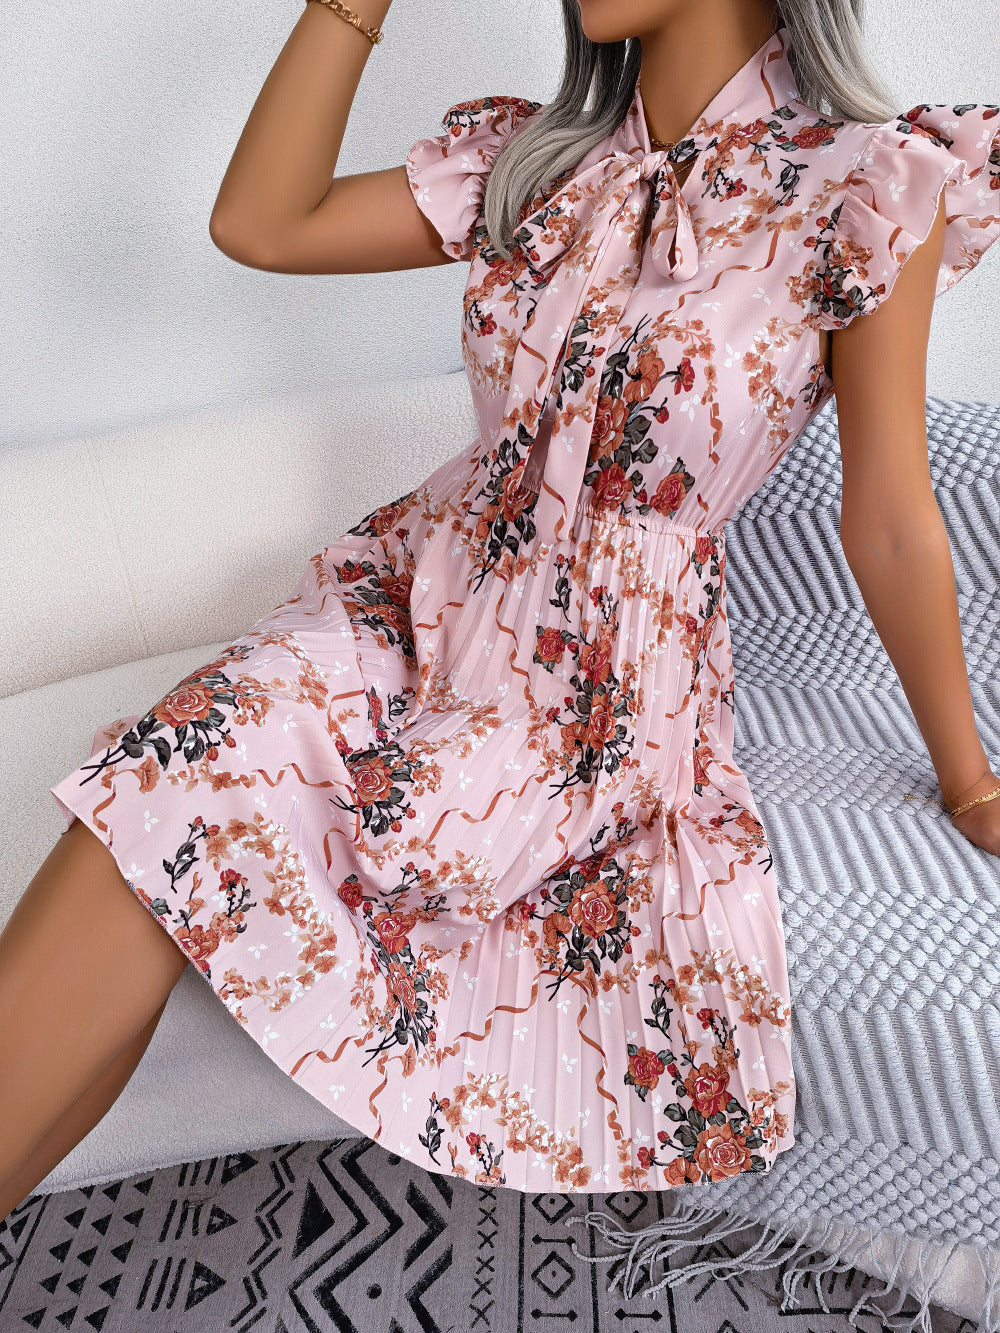 Aaliyah Isla Pleated Floral Printed Tie Neck Knee Length Dress